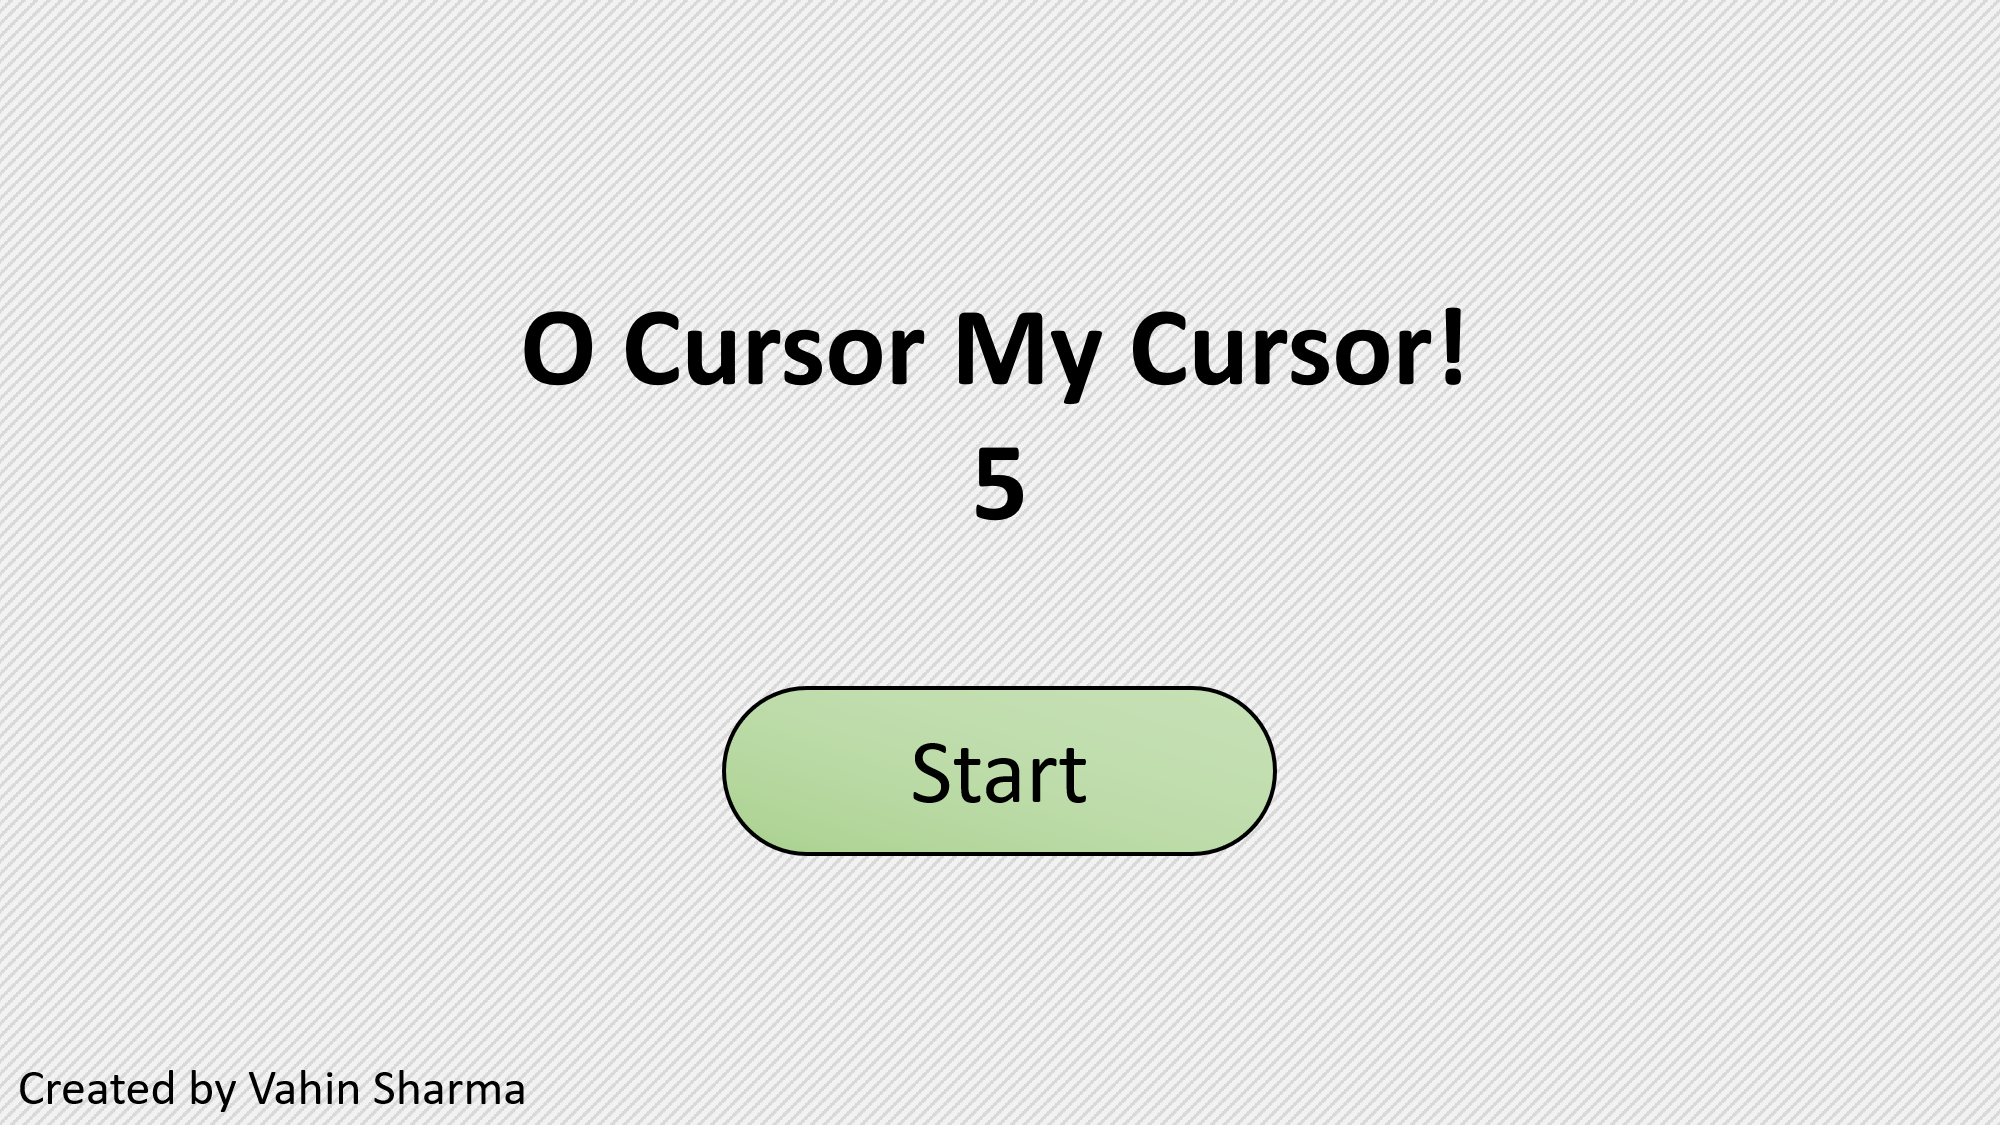 O Cursor My Cursor! 5